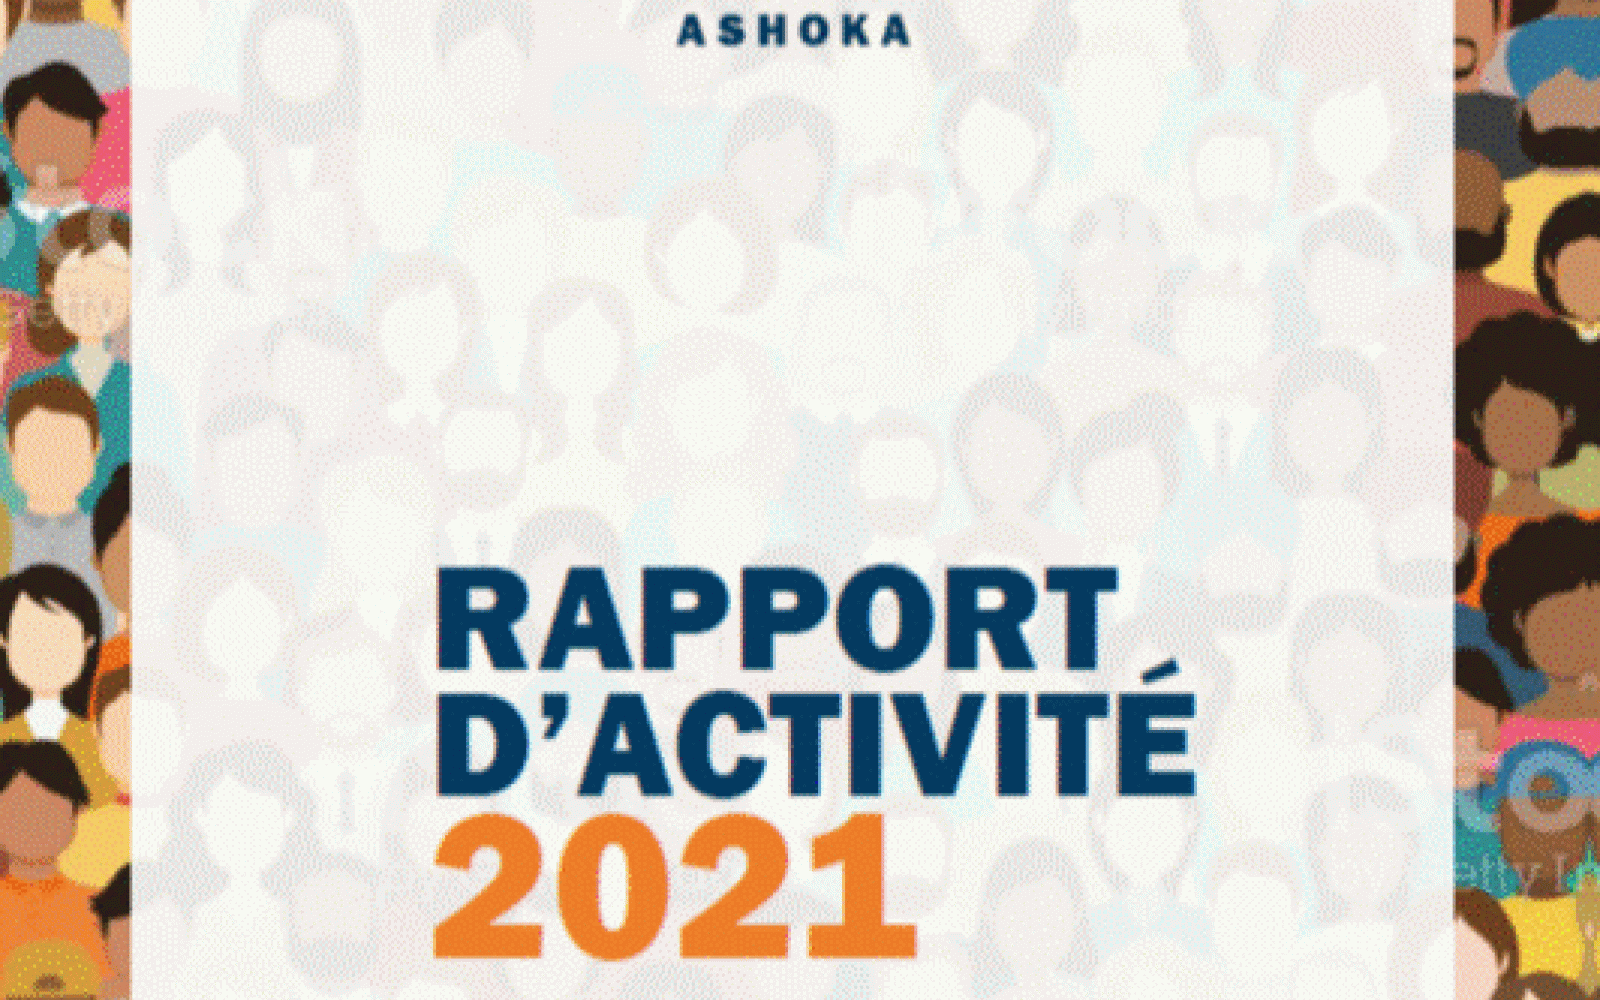 visages et logo ashoka ainsi que texte Rapport d'activités 2021